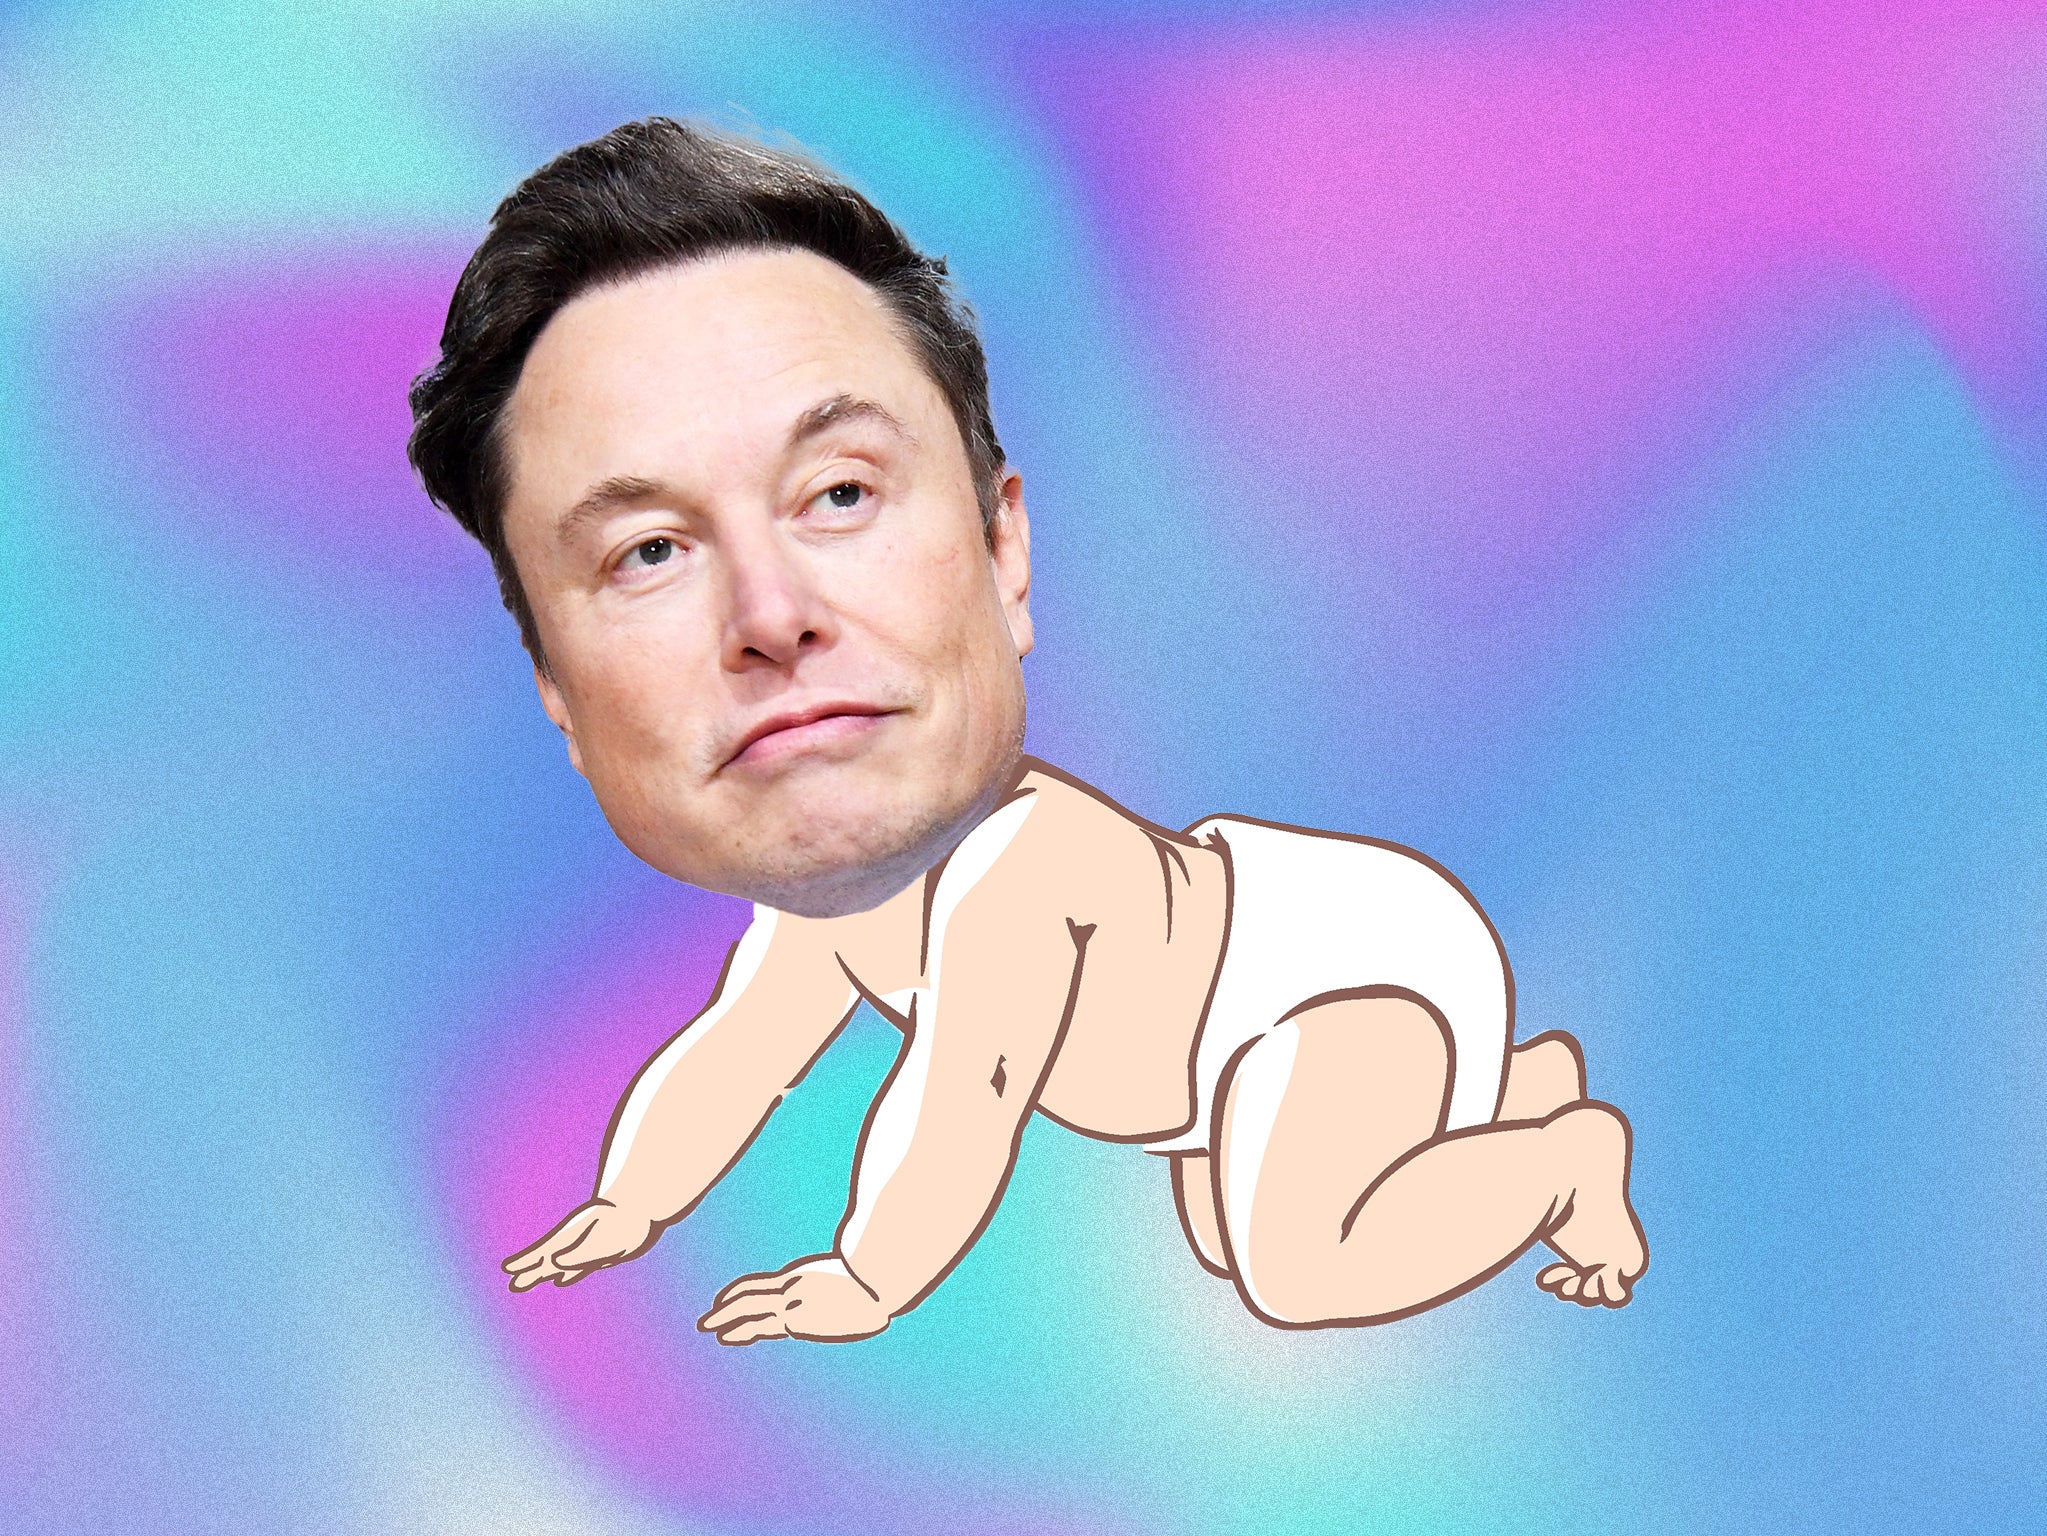 Personajes de la cultura como Elon Musk, Donald Trump y Andrew Tate han sido apodados “bebés adultos”